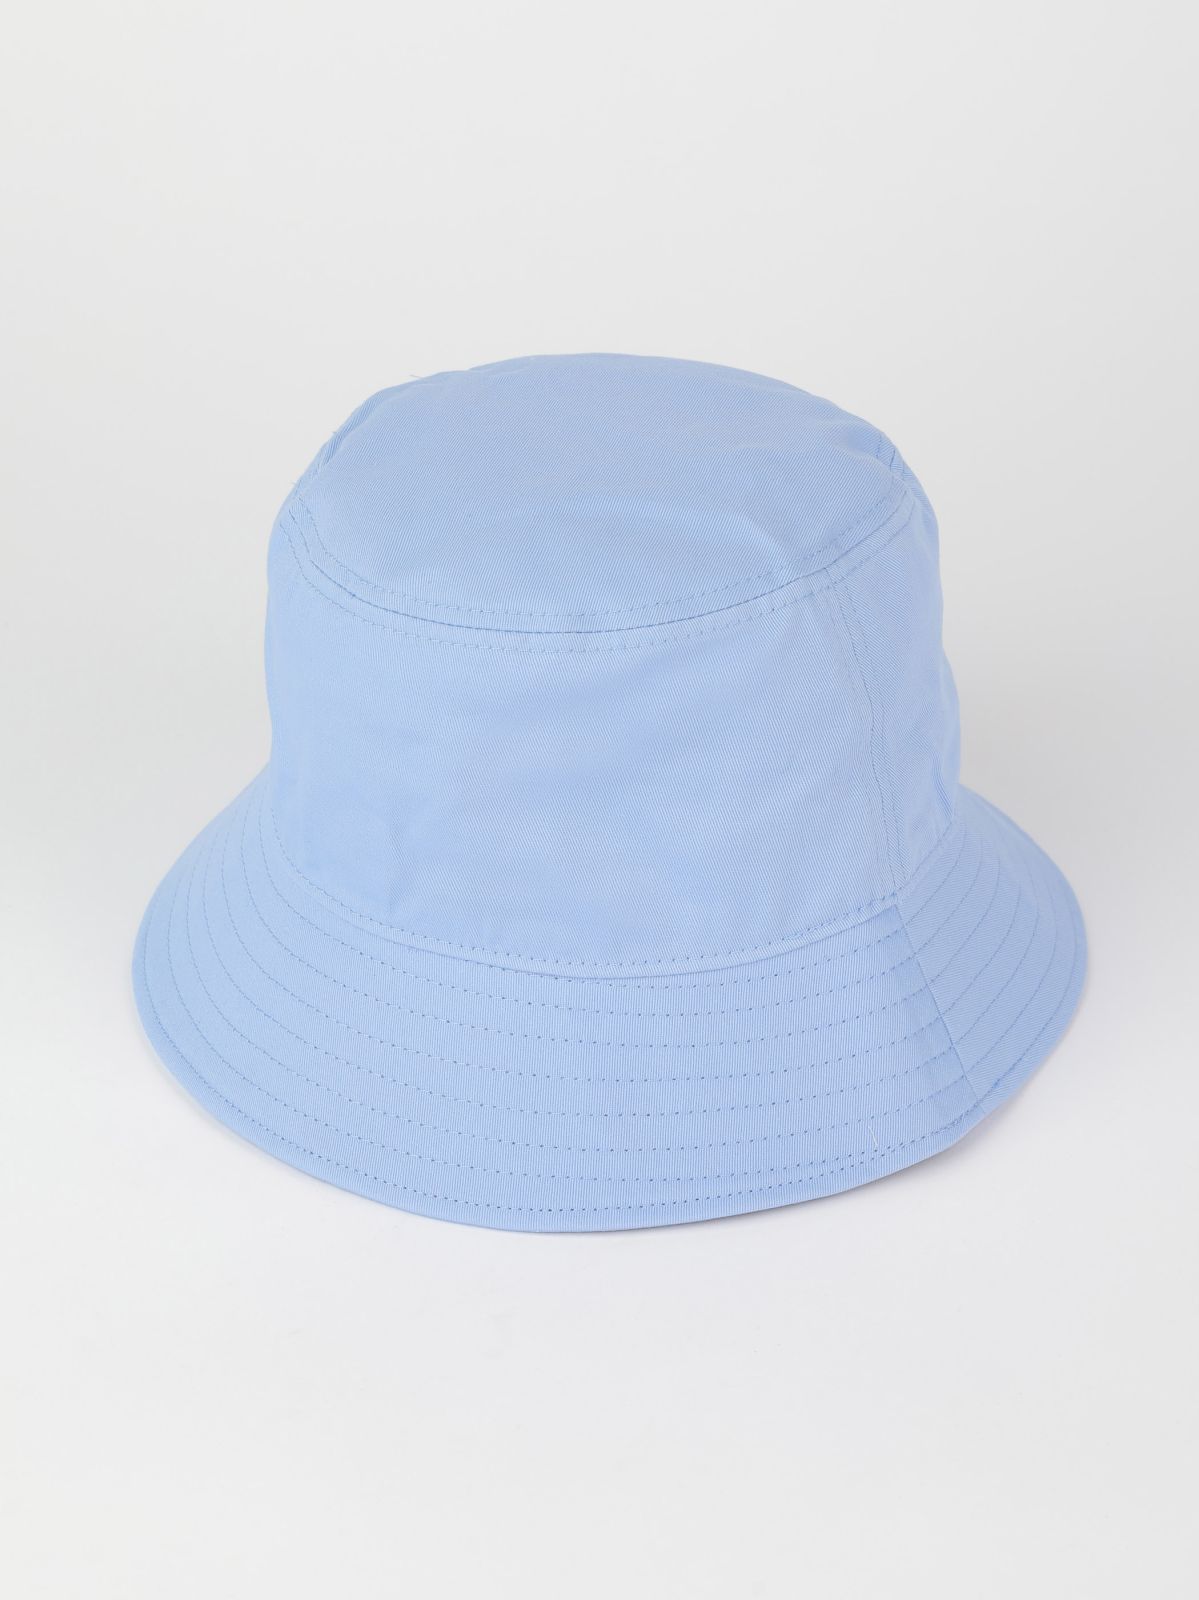  כובע באקט לוגו / נשים של TOMMY HILFIGER